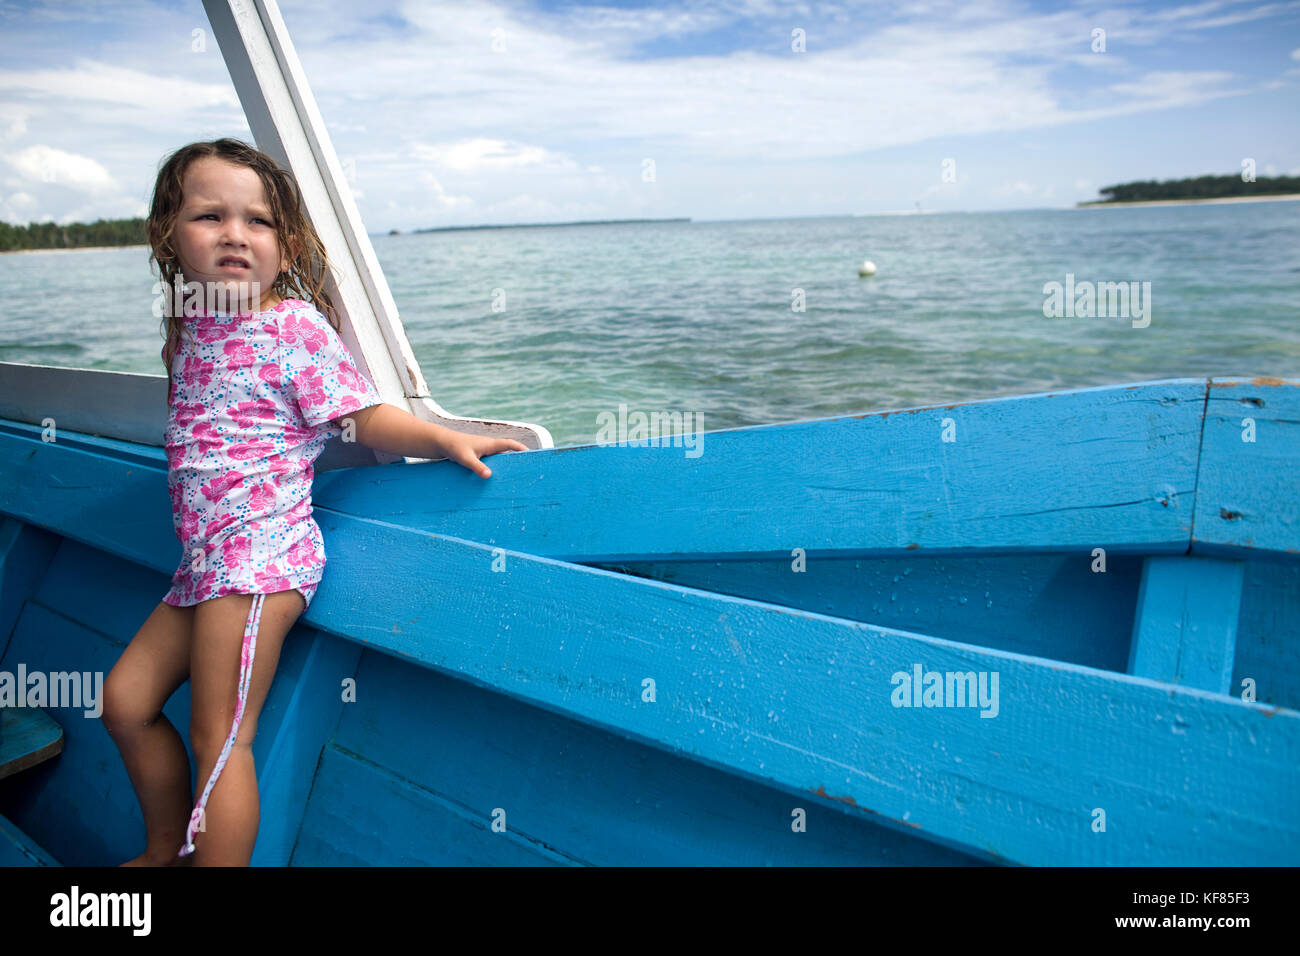 L'Indonésie, les îles Mentawai, kandui left Surf resort, fille debout dans un bateau en bois, à l'écart Banque D'Images